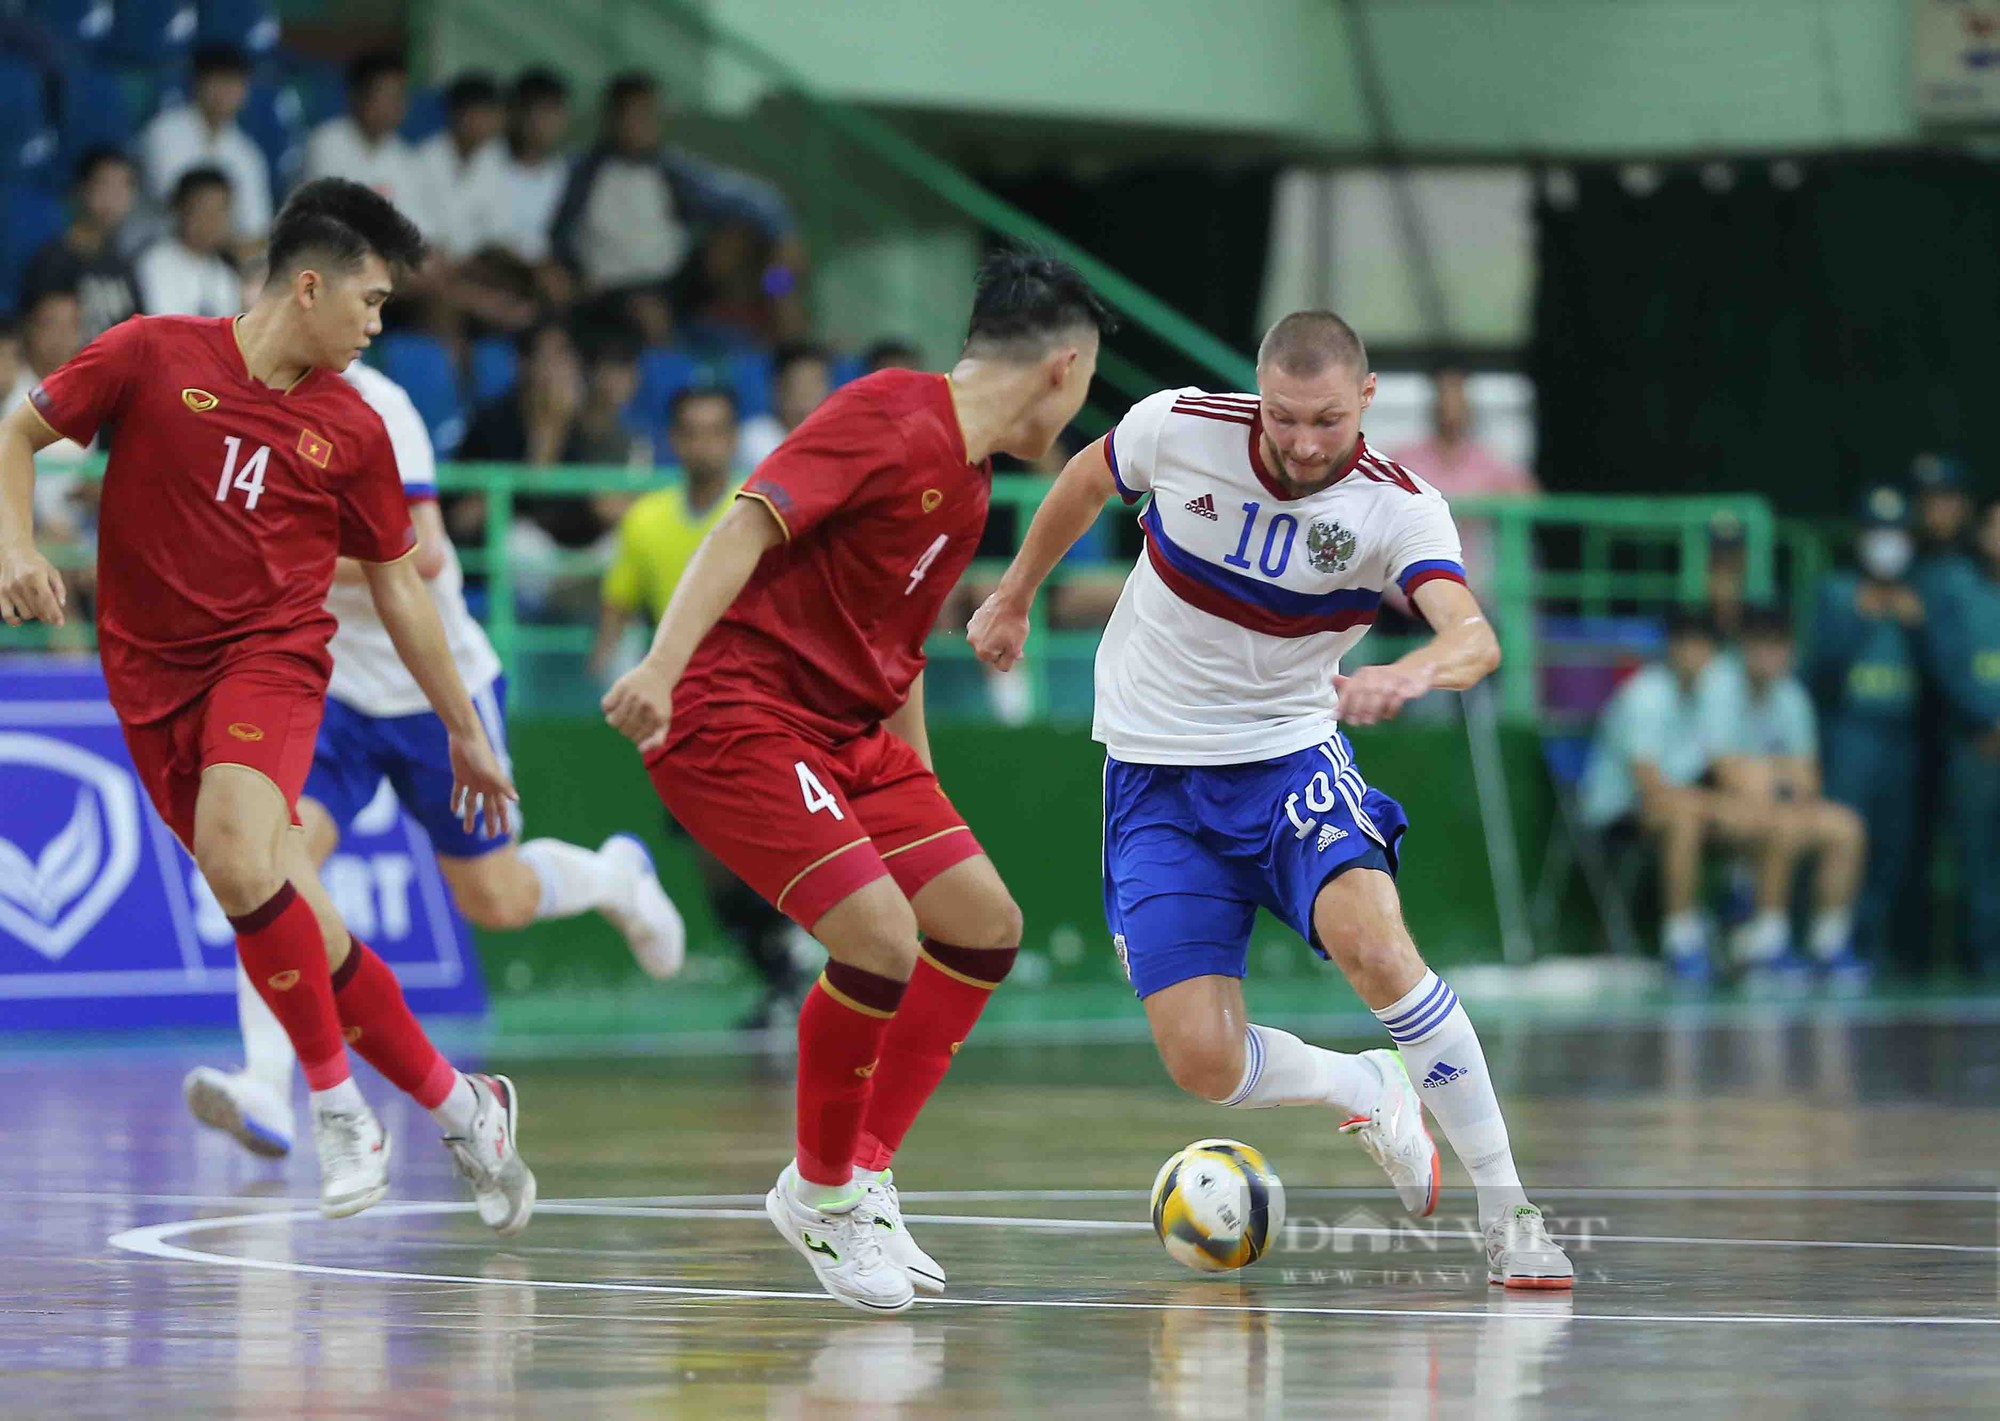 Tân đội trưởng ghi bàn phút cuối, futsal Việt Nam kịch tính cầm hoà đội hạng 4 thế giới - Ảnh 6.